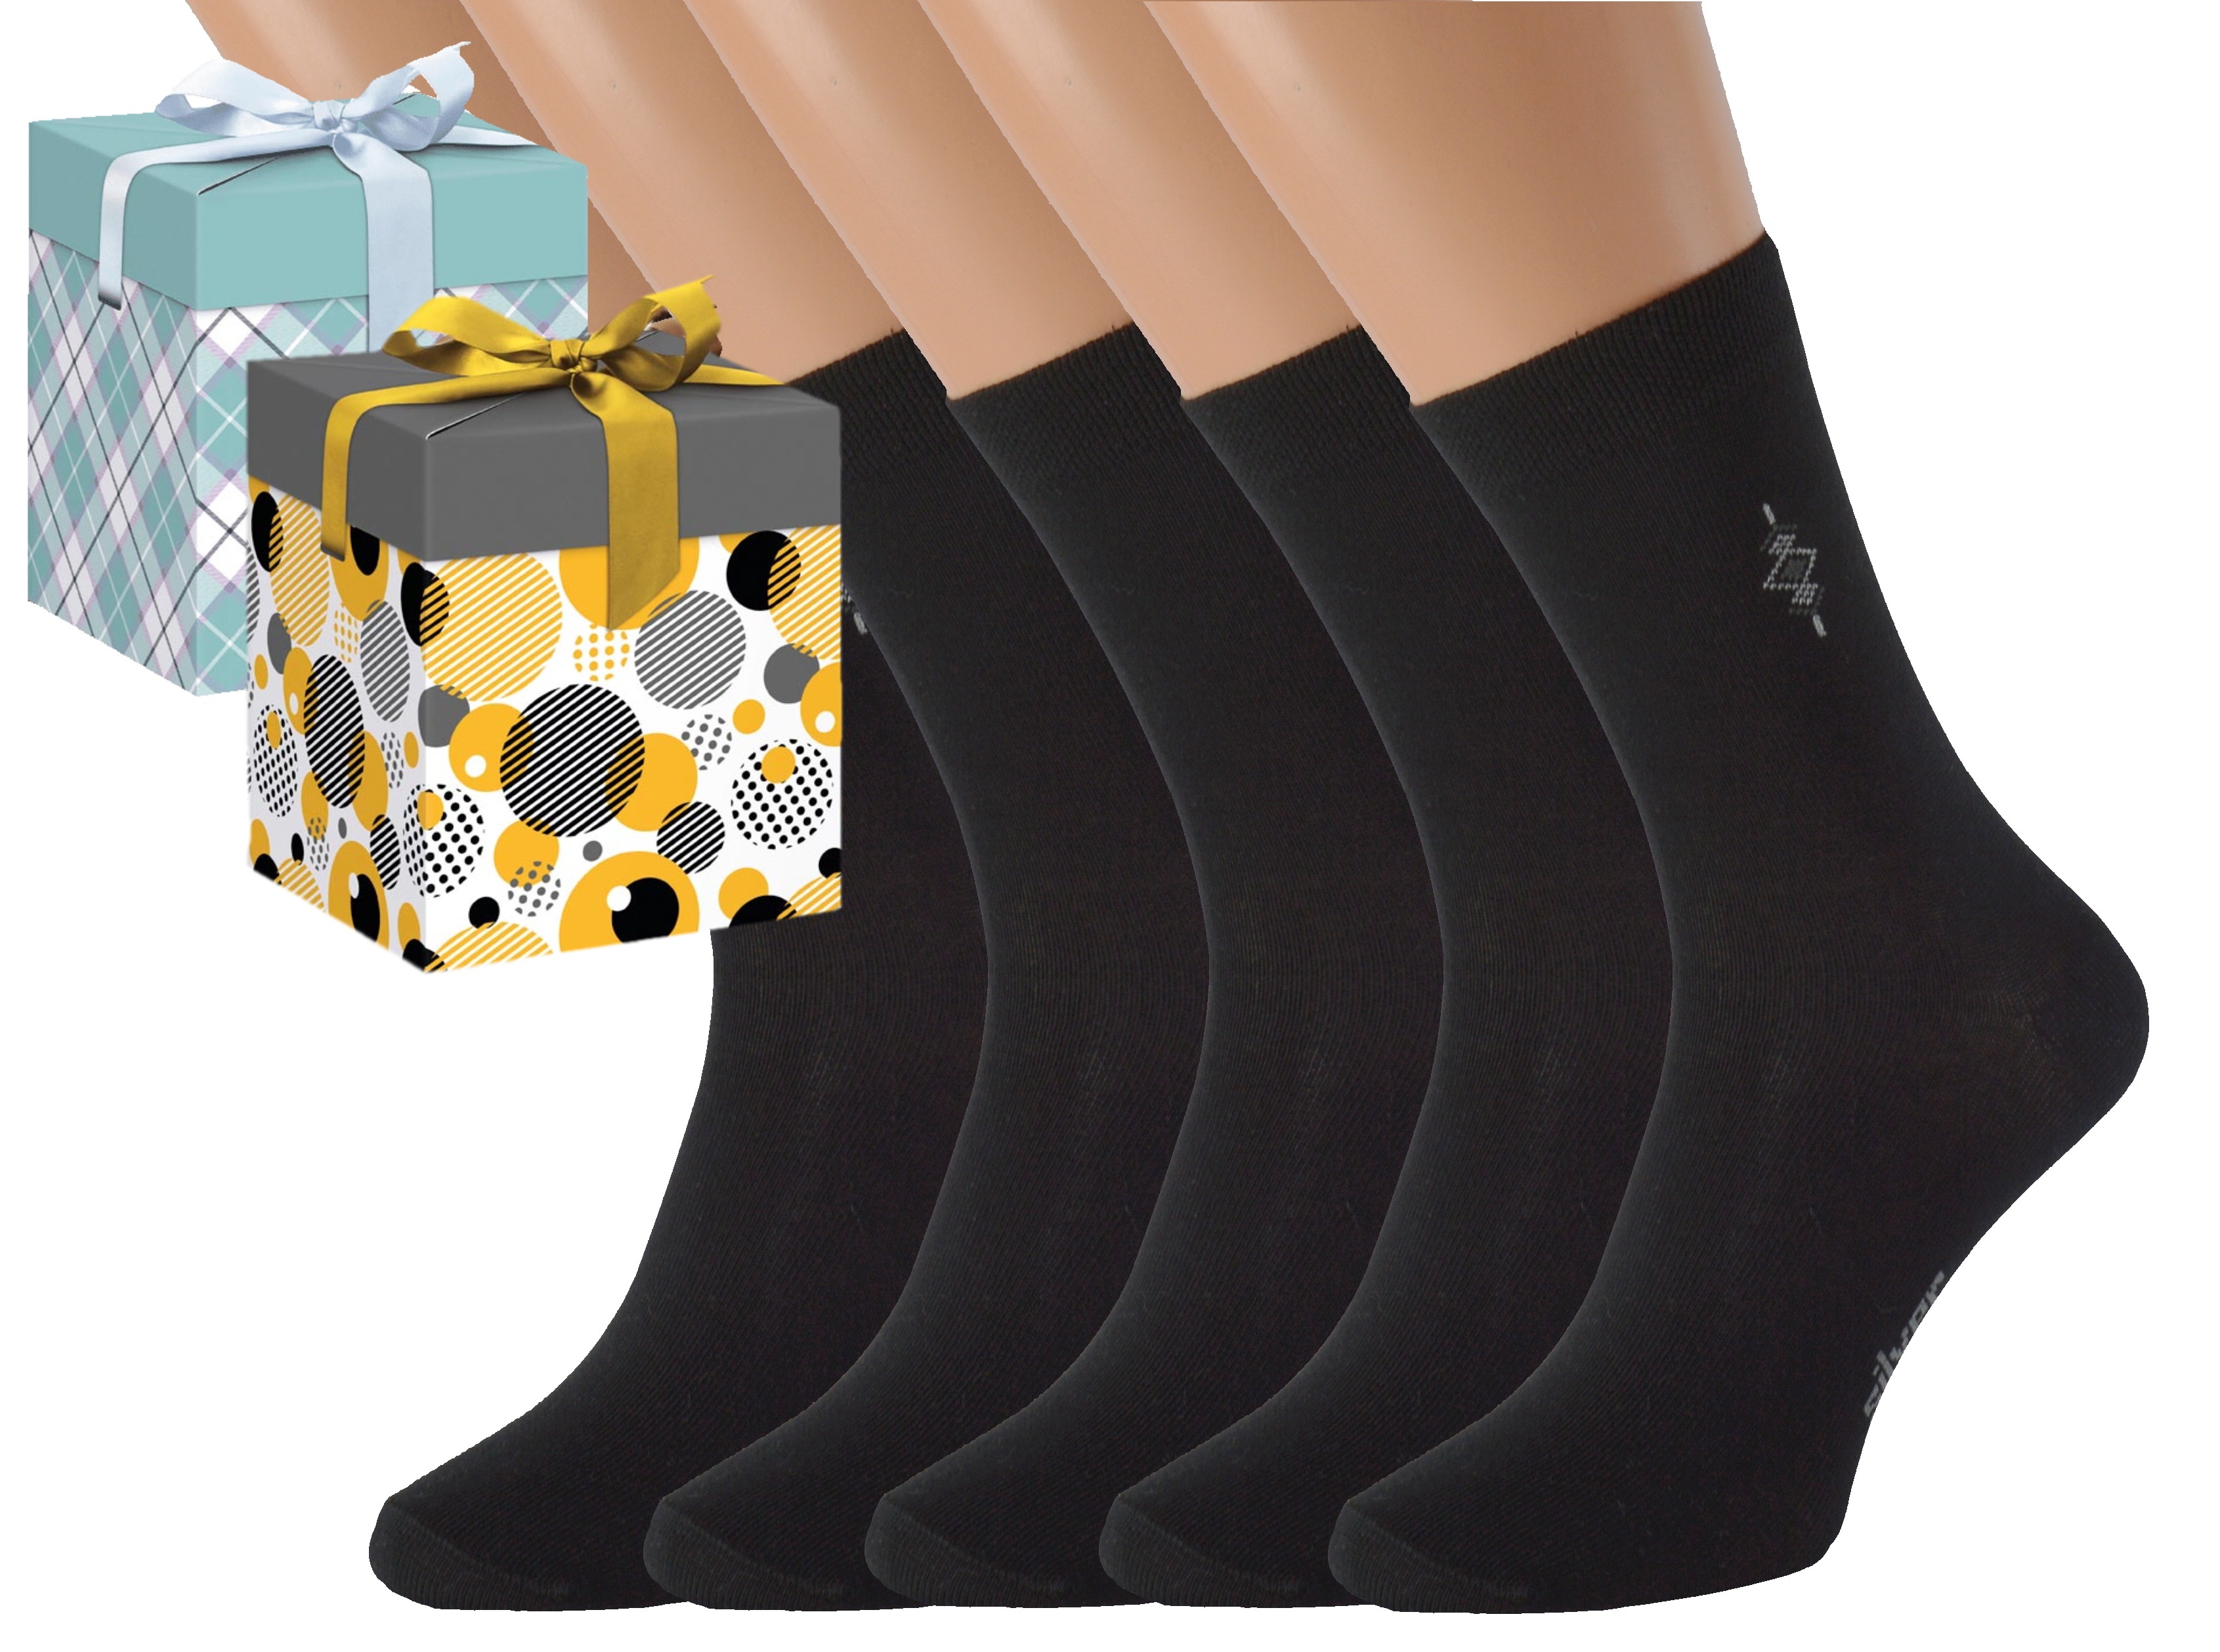 Dárkové balení 5 párů společenských ponožek BOBOLYC Barva: Černé, Velikost: EUR 38-41 (UK 5-7), Zvolte variantu dárkového balení: Modrá s oky